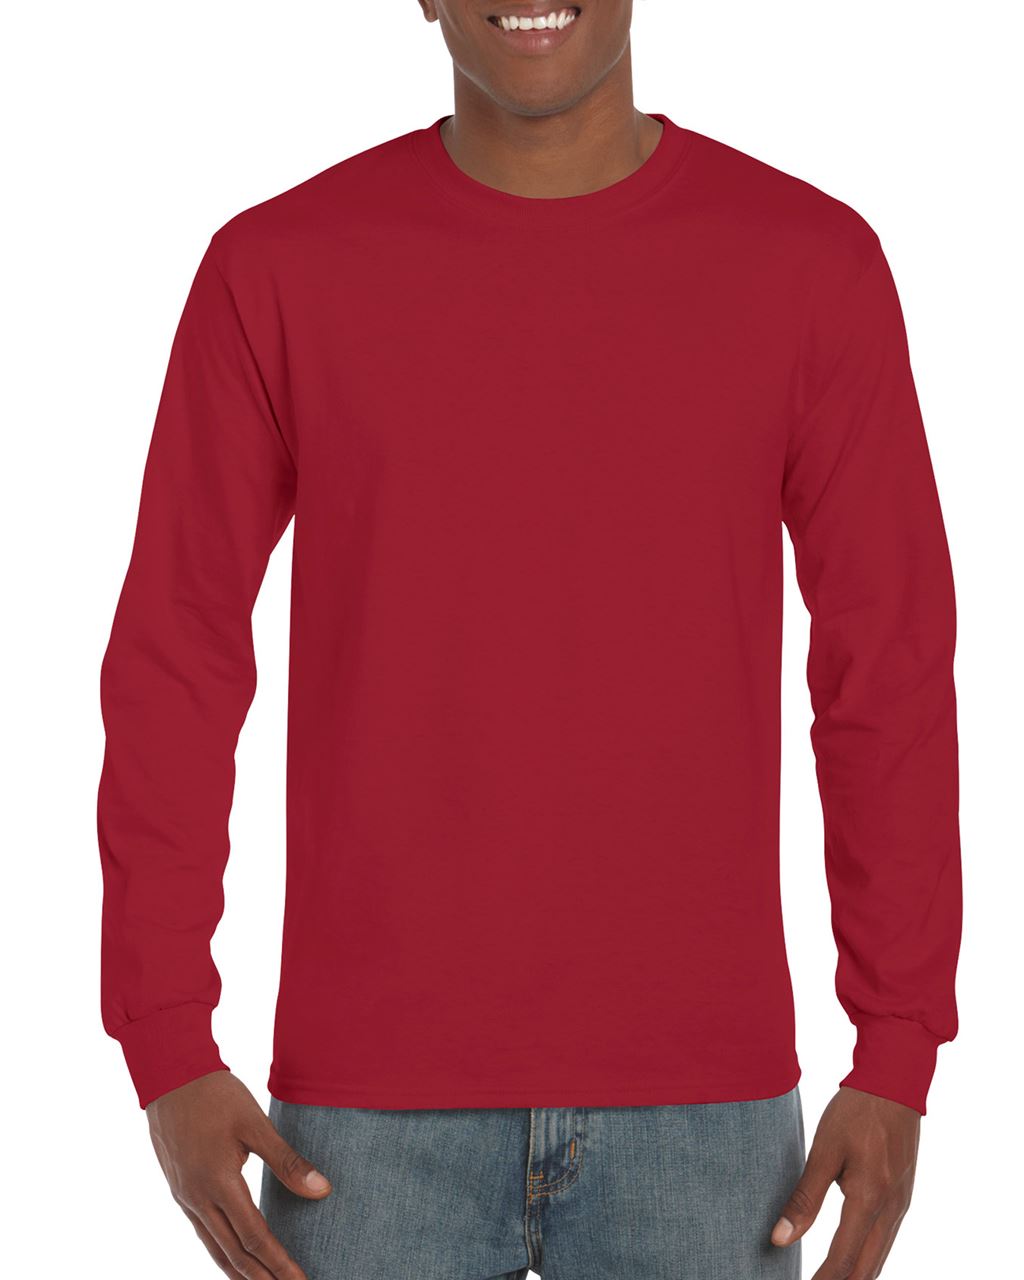 Gildan Ultra Cotton™ Adult Long Sleeve T-shirt - Gildan Ultra Cotton™ Adult Long Sleeve T-shirt - Cardinal Red